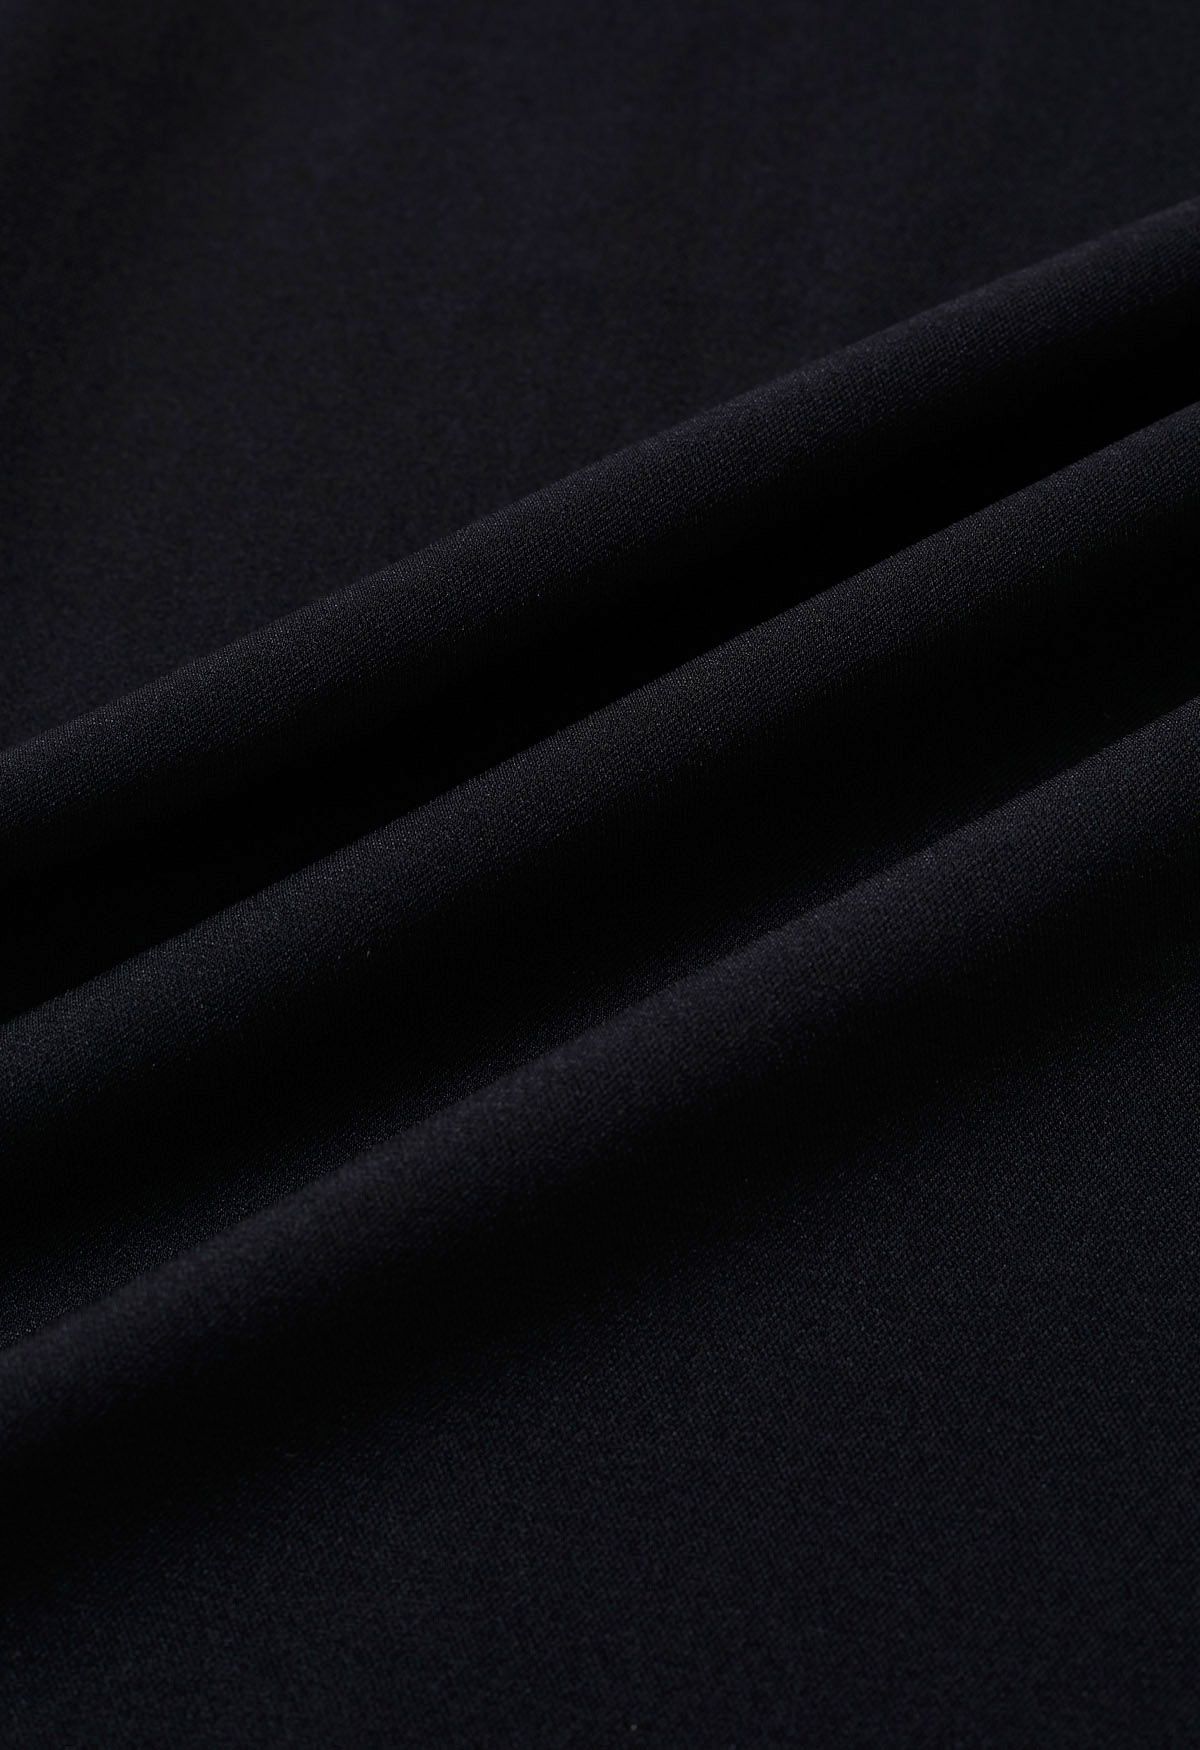 Pantalones anchos plisados de cintura alta fruncidos en negro